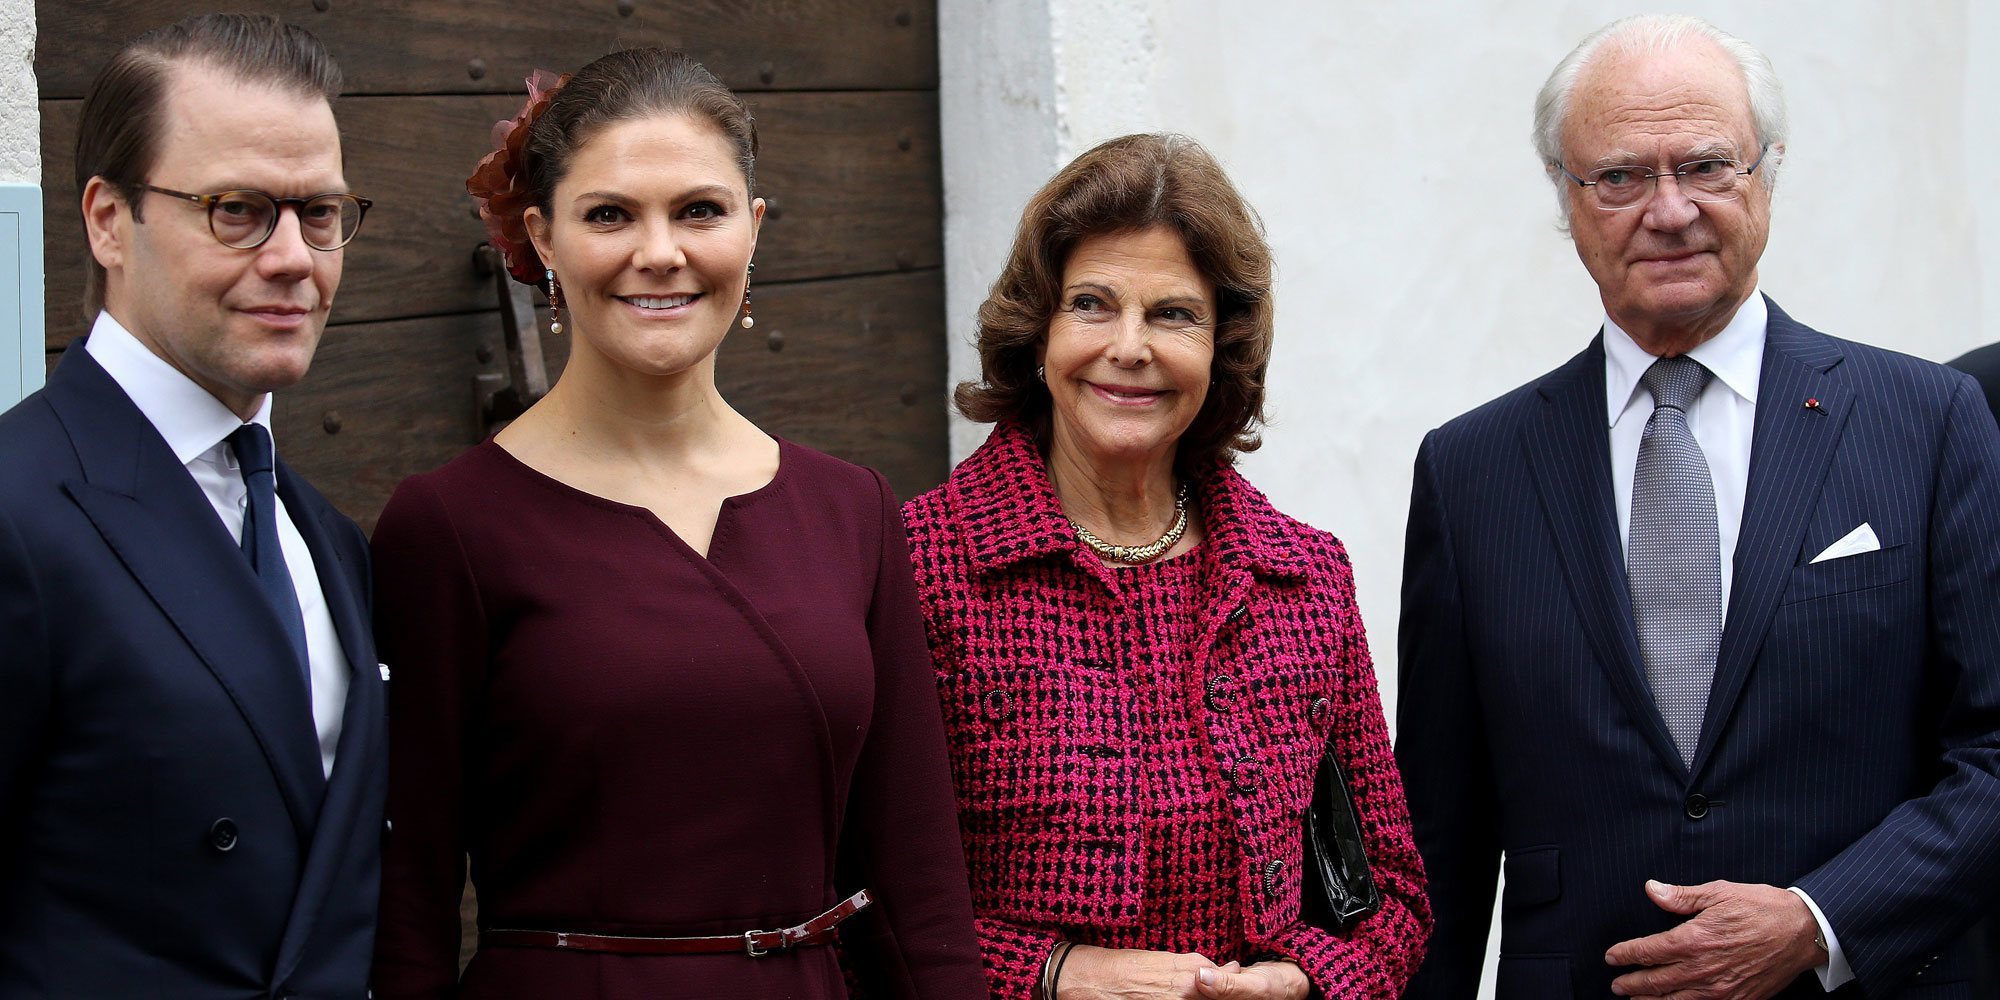 Los Reyes Carlos Gustavo y Silvia y los Príncipes Victoria y Daniel de Suecia, negativo en coronavirus